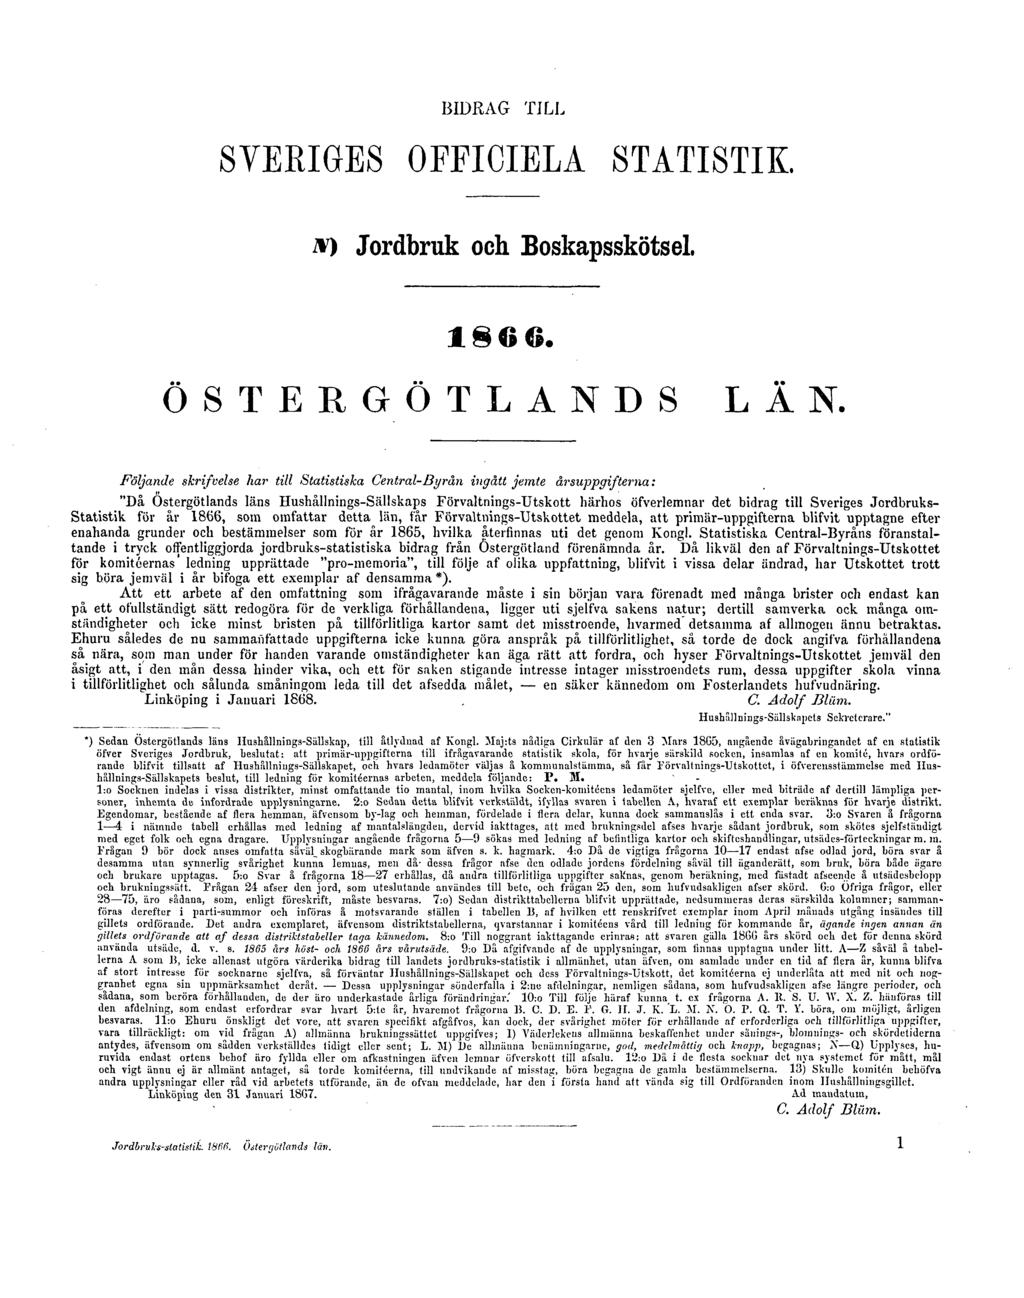 BIDRAG TILL SVERIGES OFFICIELA STATISTIK. N) Jordbruk och Boskapsskötsel. 1866. ÖSTERGÖTLANDS LÄN.